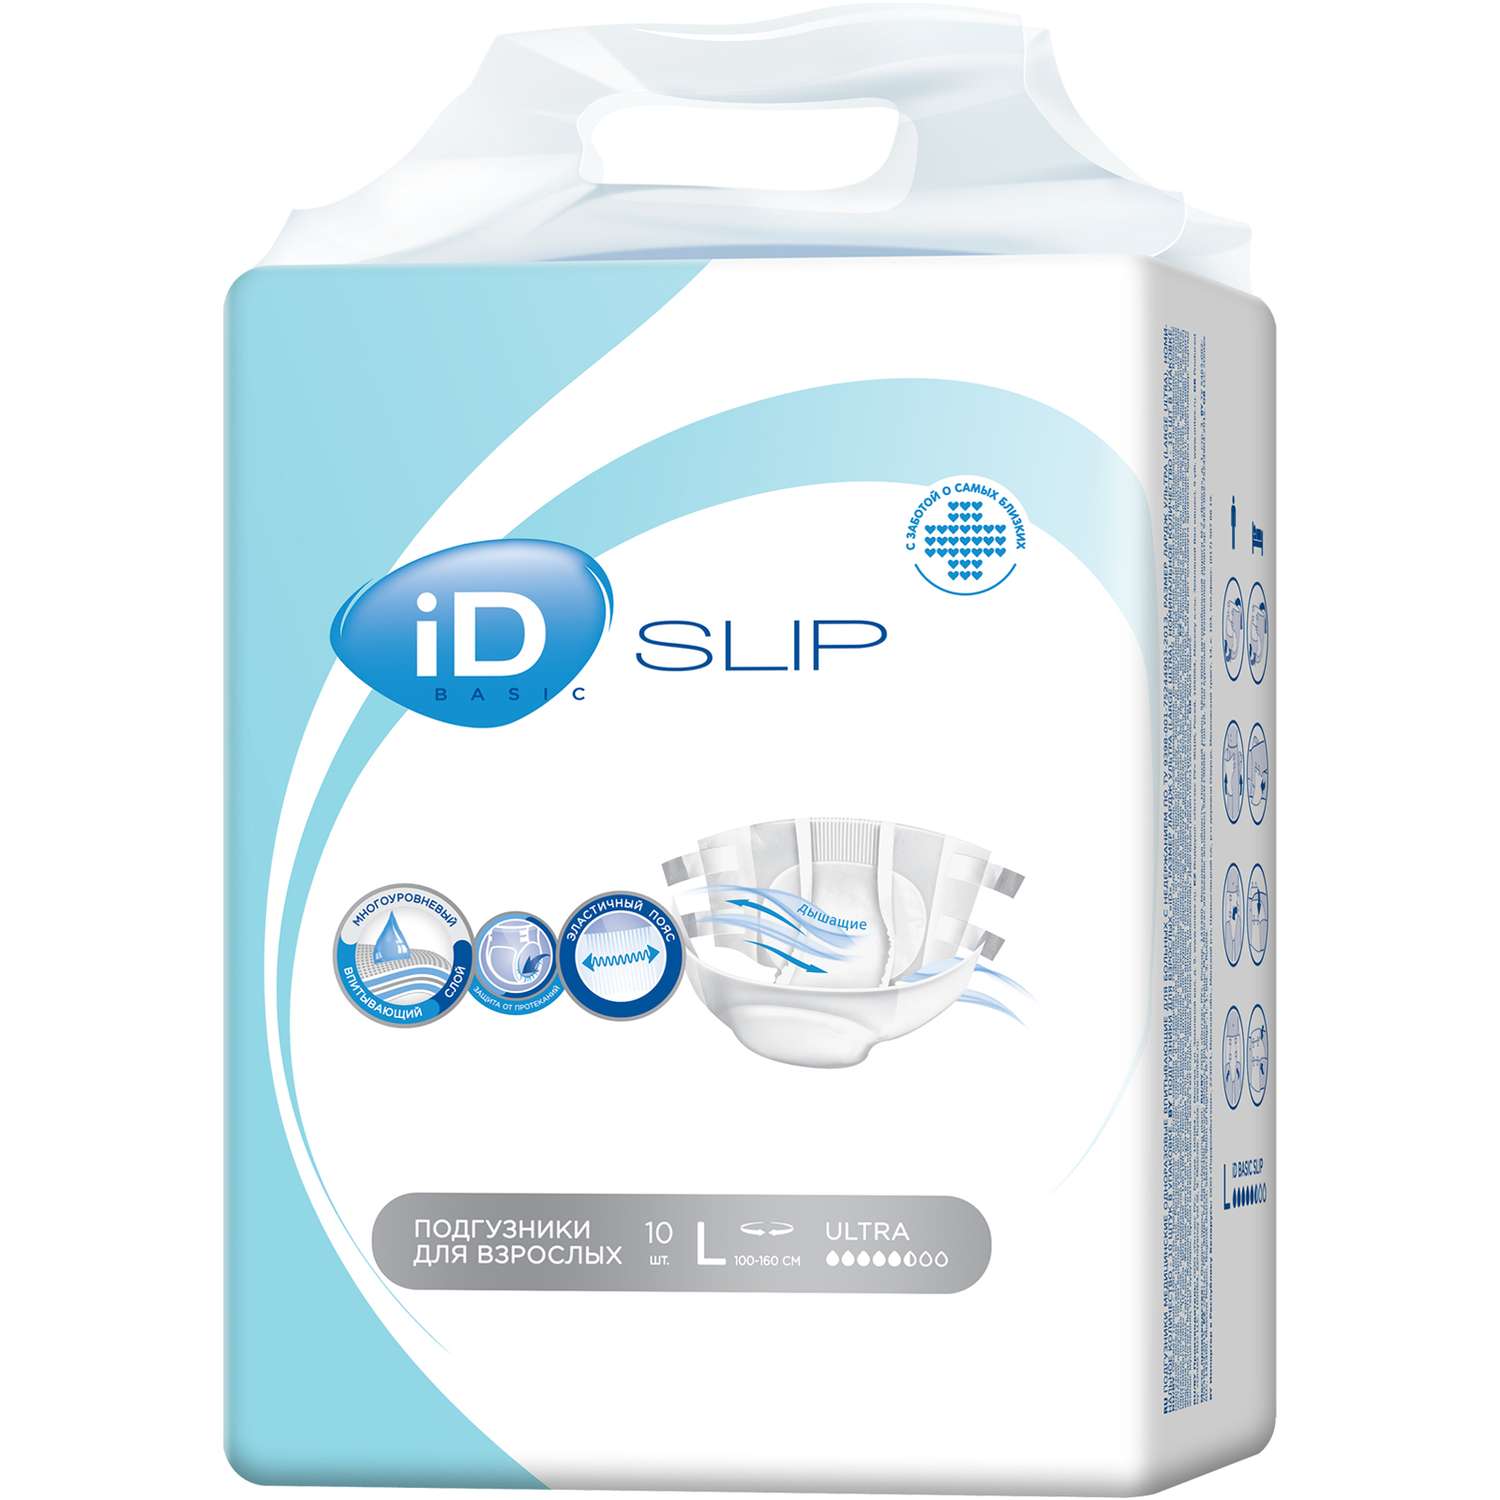 Подгузники для взрослых iD Slip basic L 10 шт - фото 2